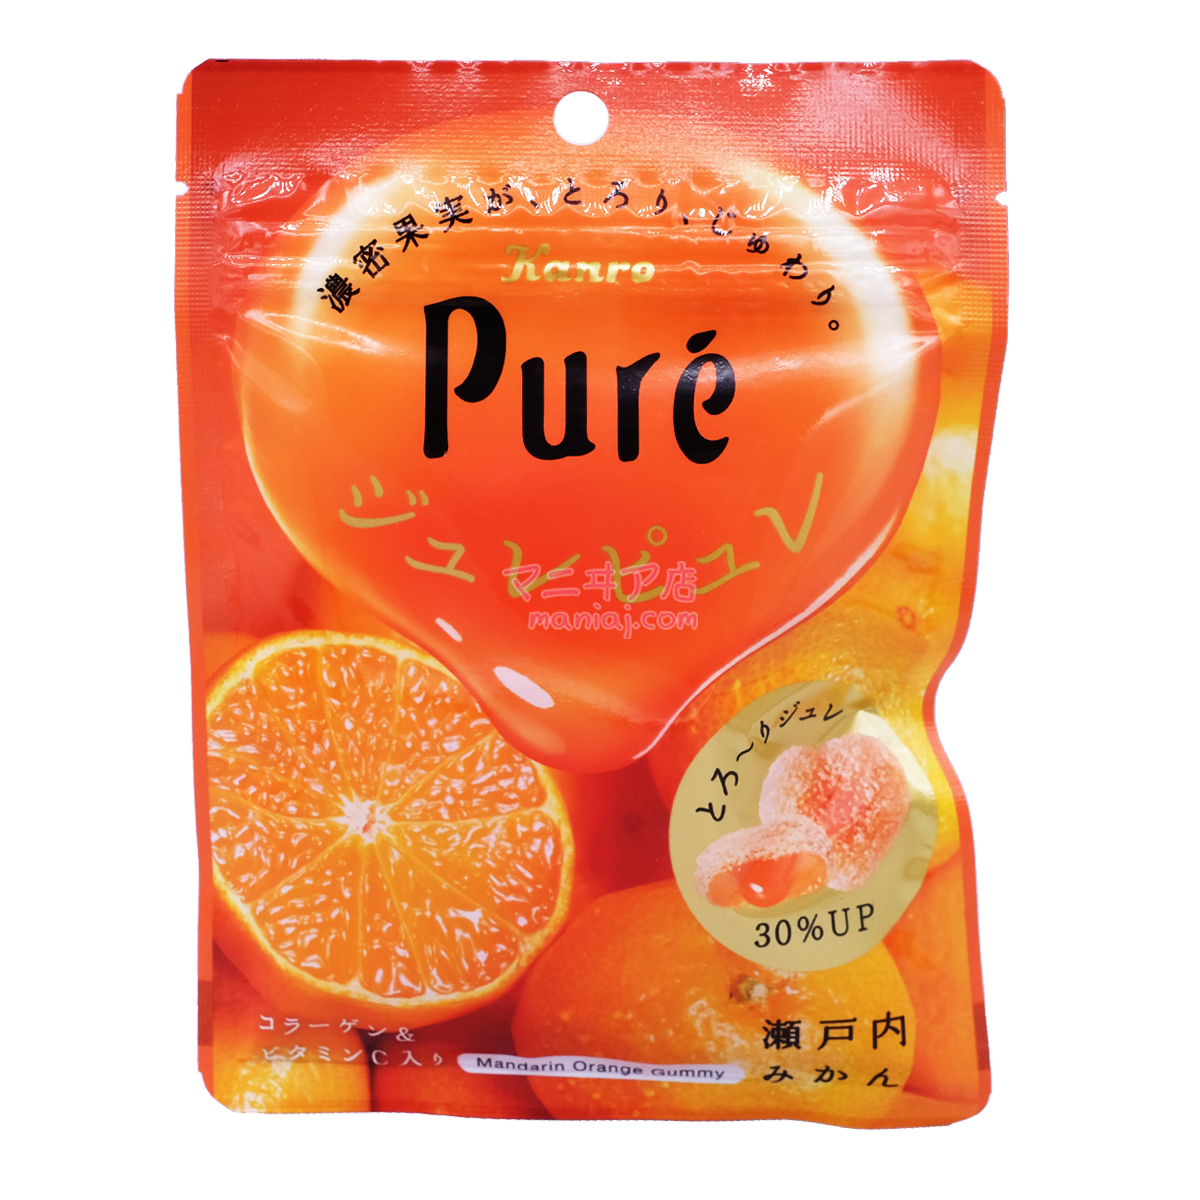 Setouchi Citrus Flavored Sweets